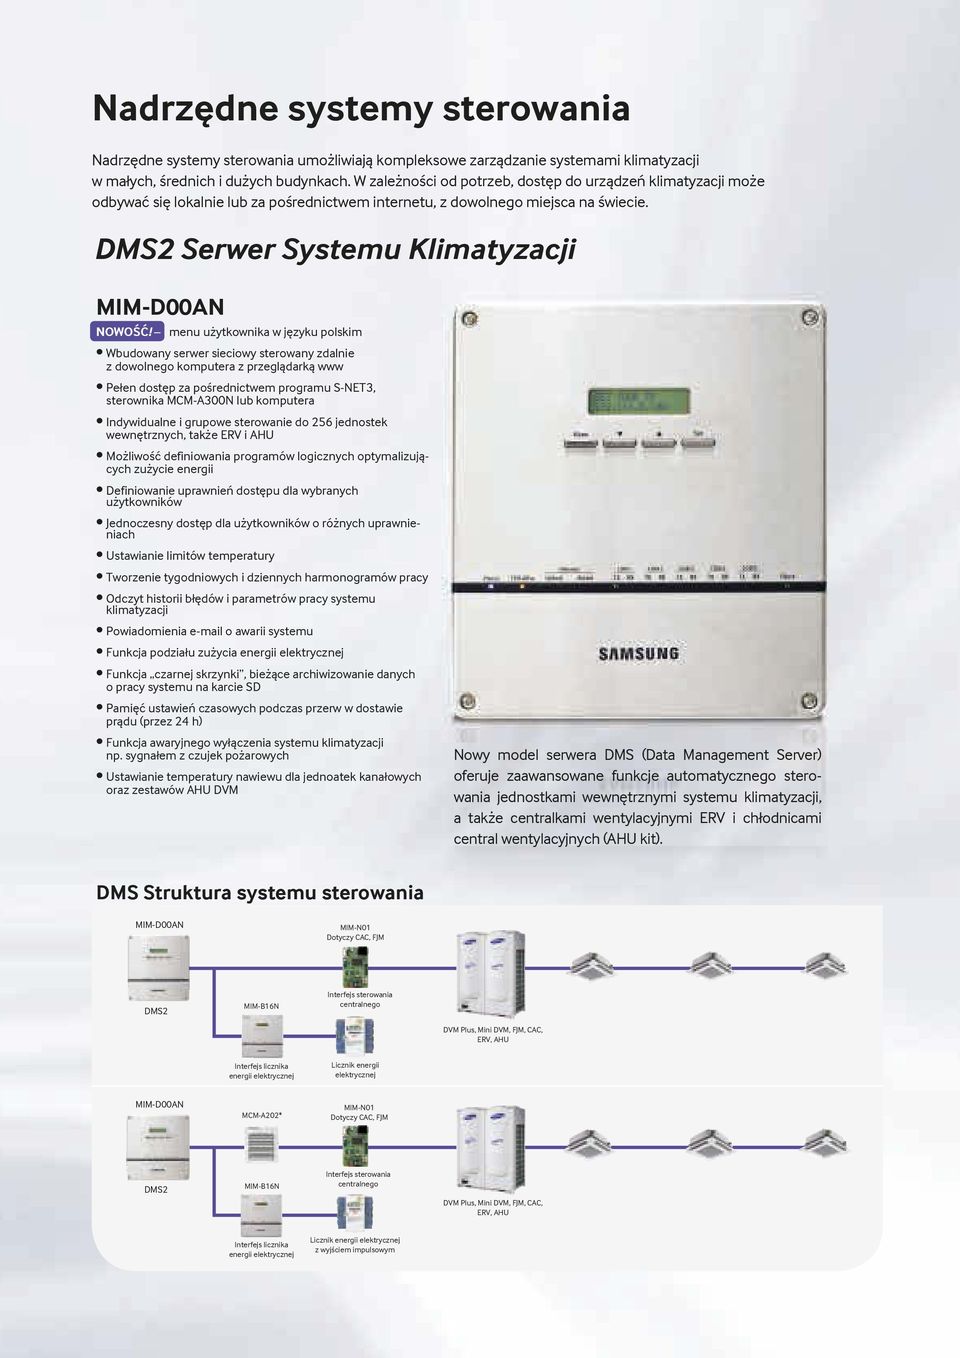 DMS 2 Serwer Systemu Klimatyzacji Systemy sterowania NWŚĆ!